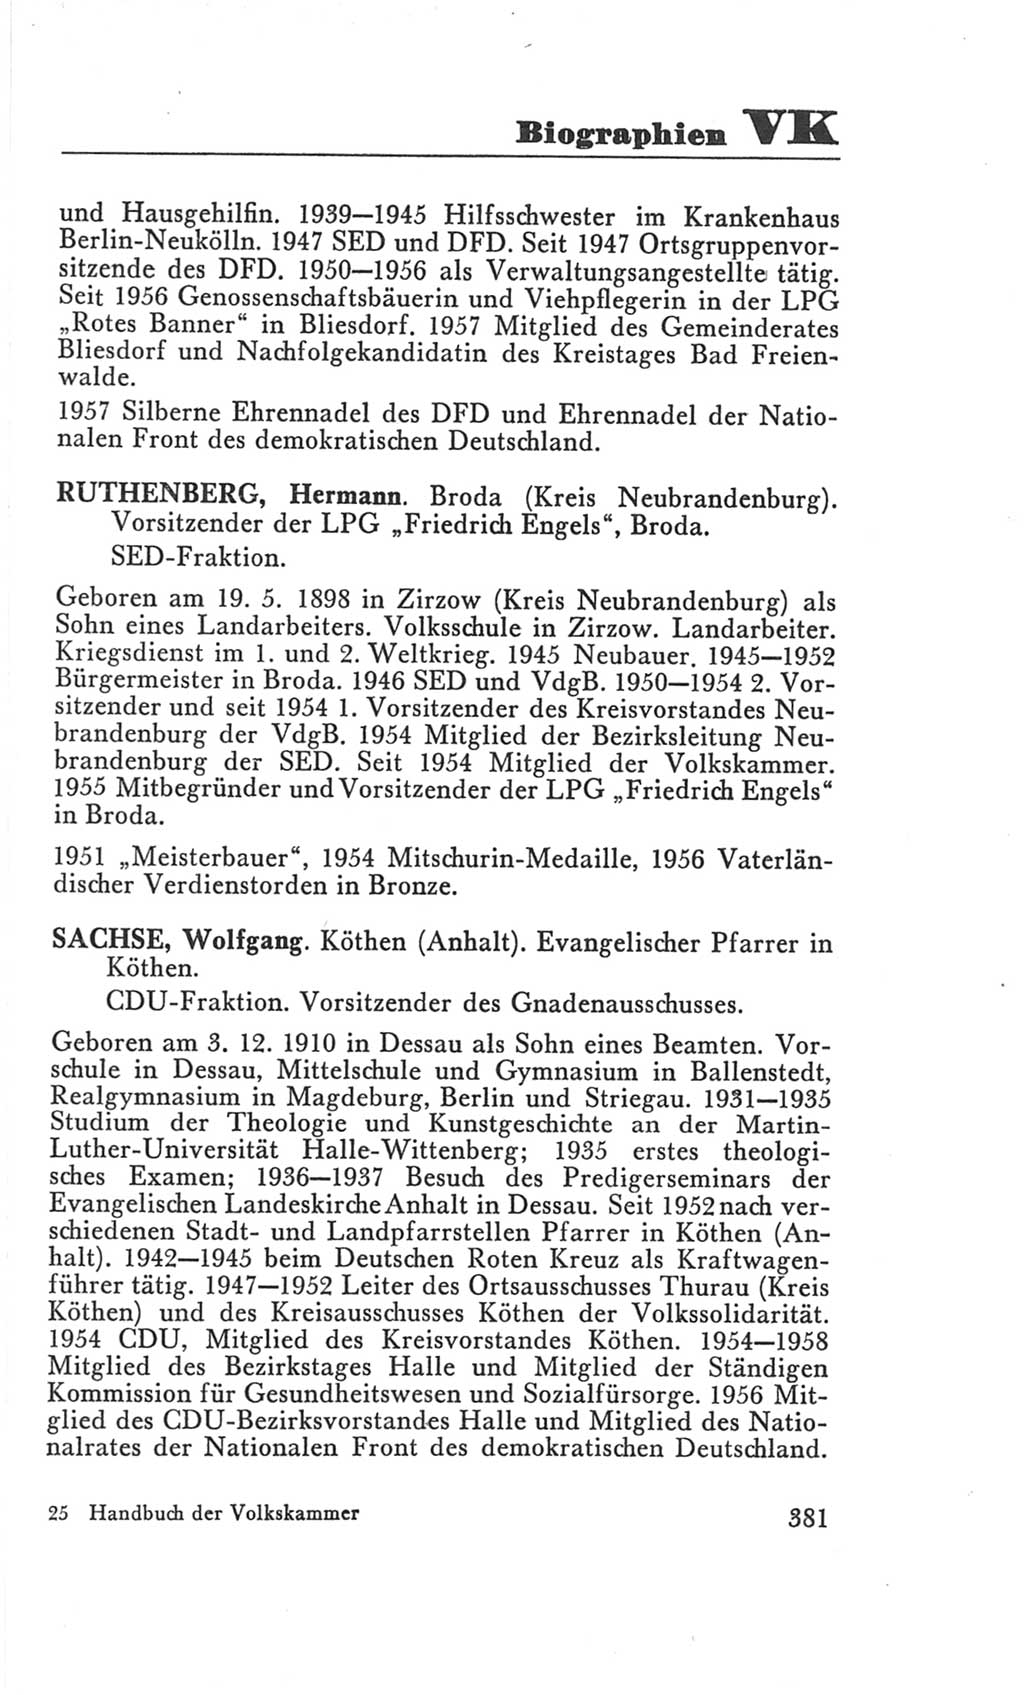 Handbuch der Volkskammer (VK) der Deutschen Demokratischen Republik (DDR), 3. Wahlperiode 1958-1963, Seite 381 (Hdb. VK. DDR 3. WP. 1958-1963, S. 381)